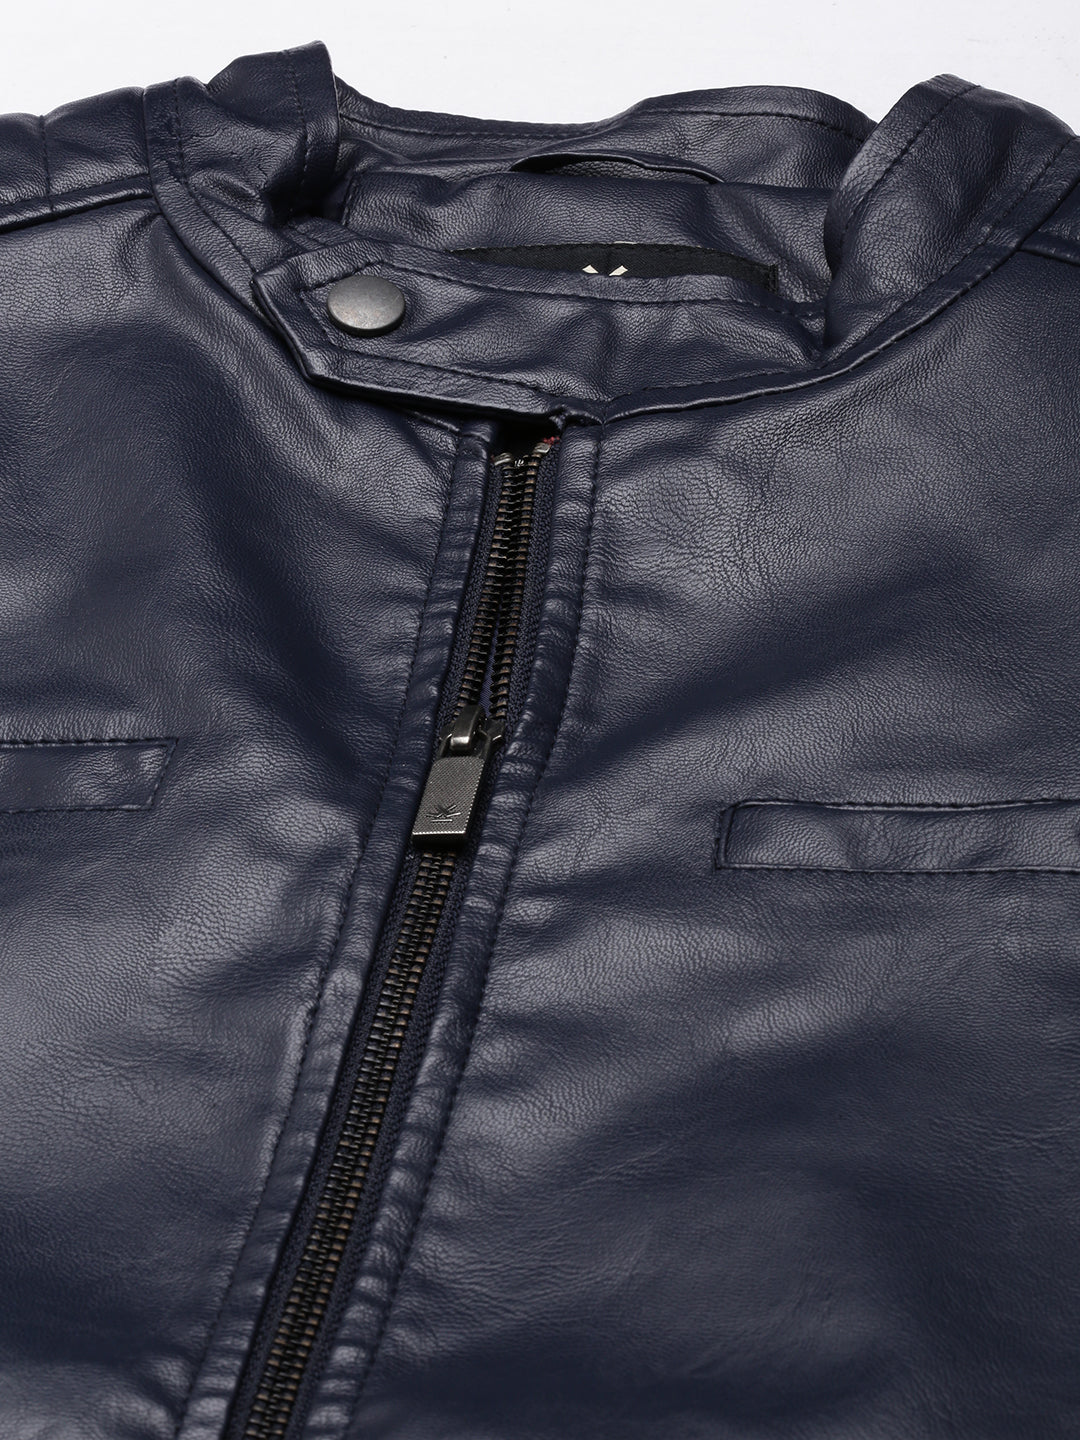 Shoulder Patch Leather Jacket